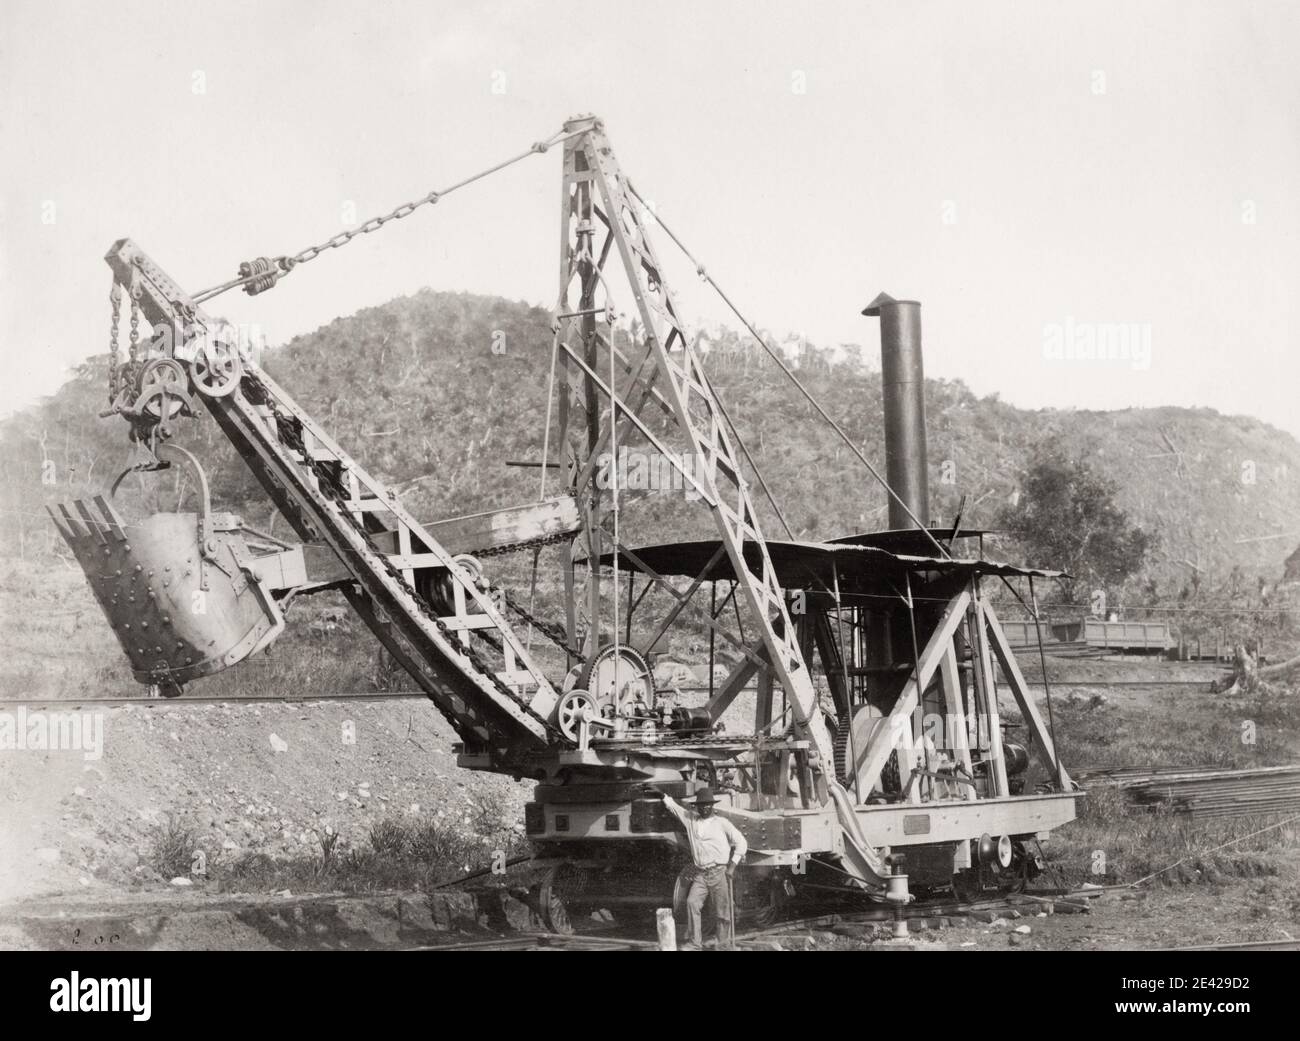 Fotografia d'epoca del XIX secolo: L'immagine si riferisce al primo tentativo guidato dai francesi di costruire il canale di Panama nel 1880 sotto la supervisione di Ferdinand de Lesseps. Escavatore. Foto Stock